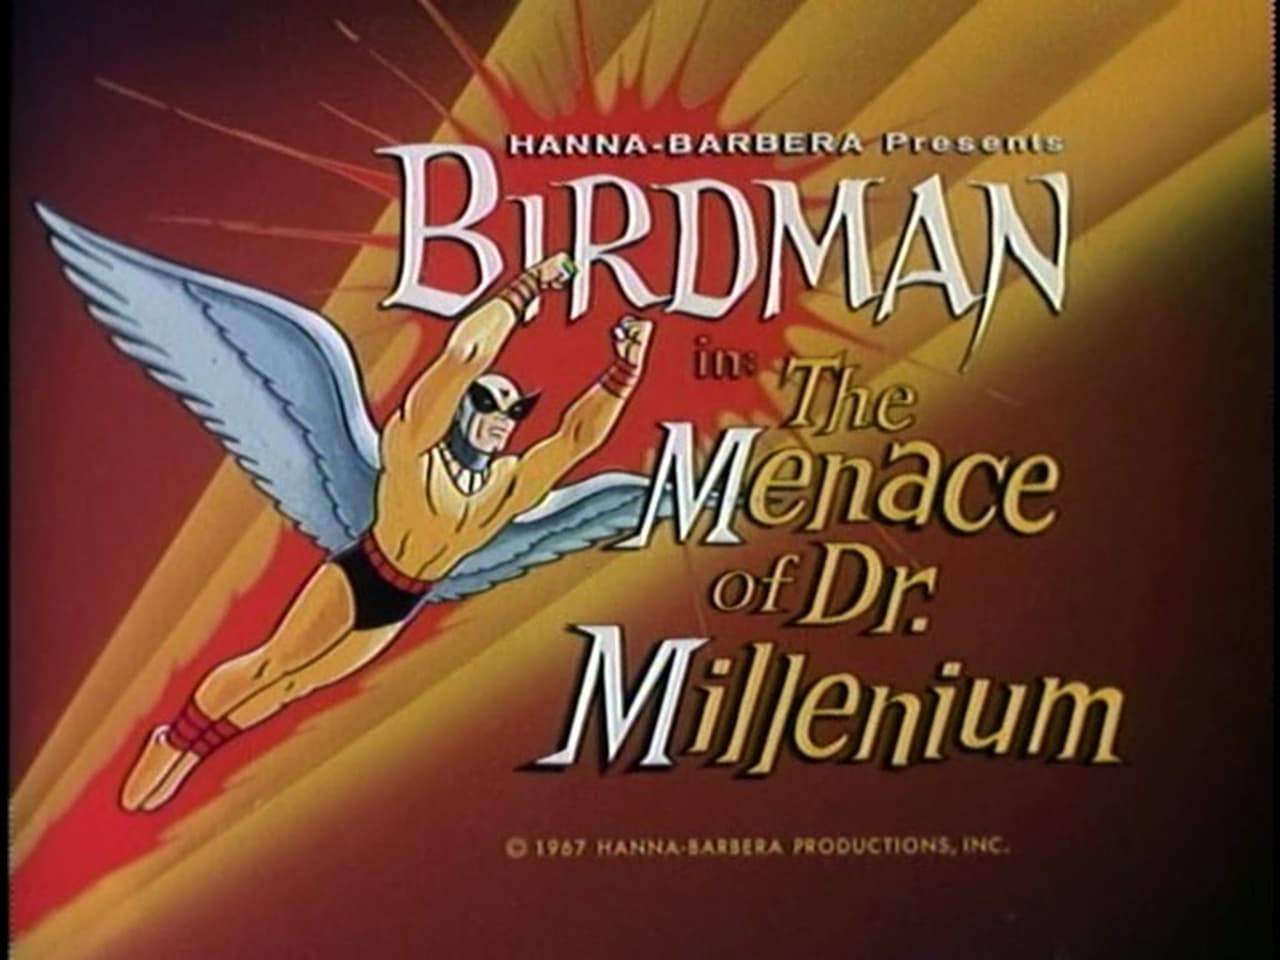 The Menace Of Dr Millenium